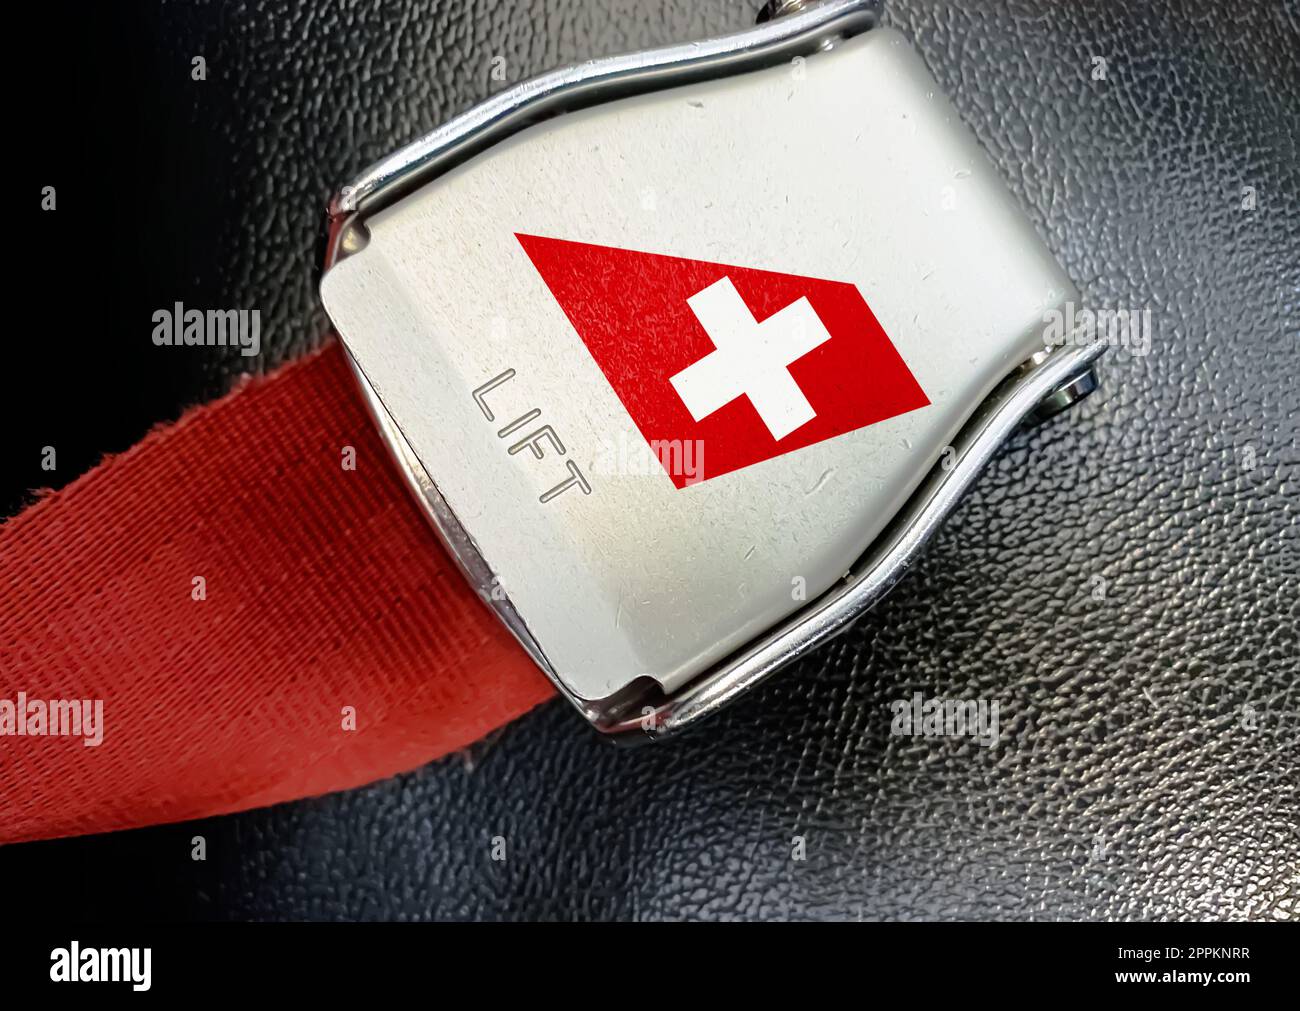 Détail de la boucle de la ceinture de sécurité avec le logo de Swiss Air sur un siège vide Banque D'Images